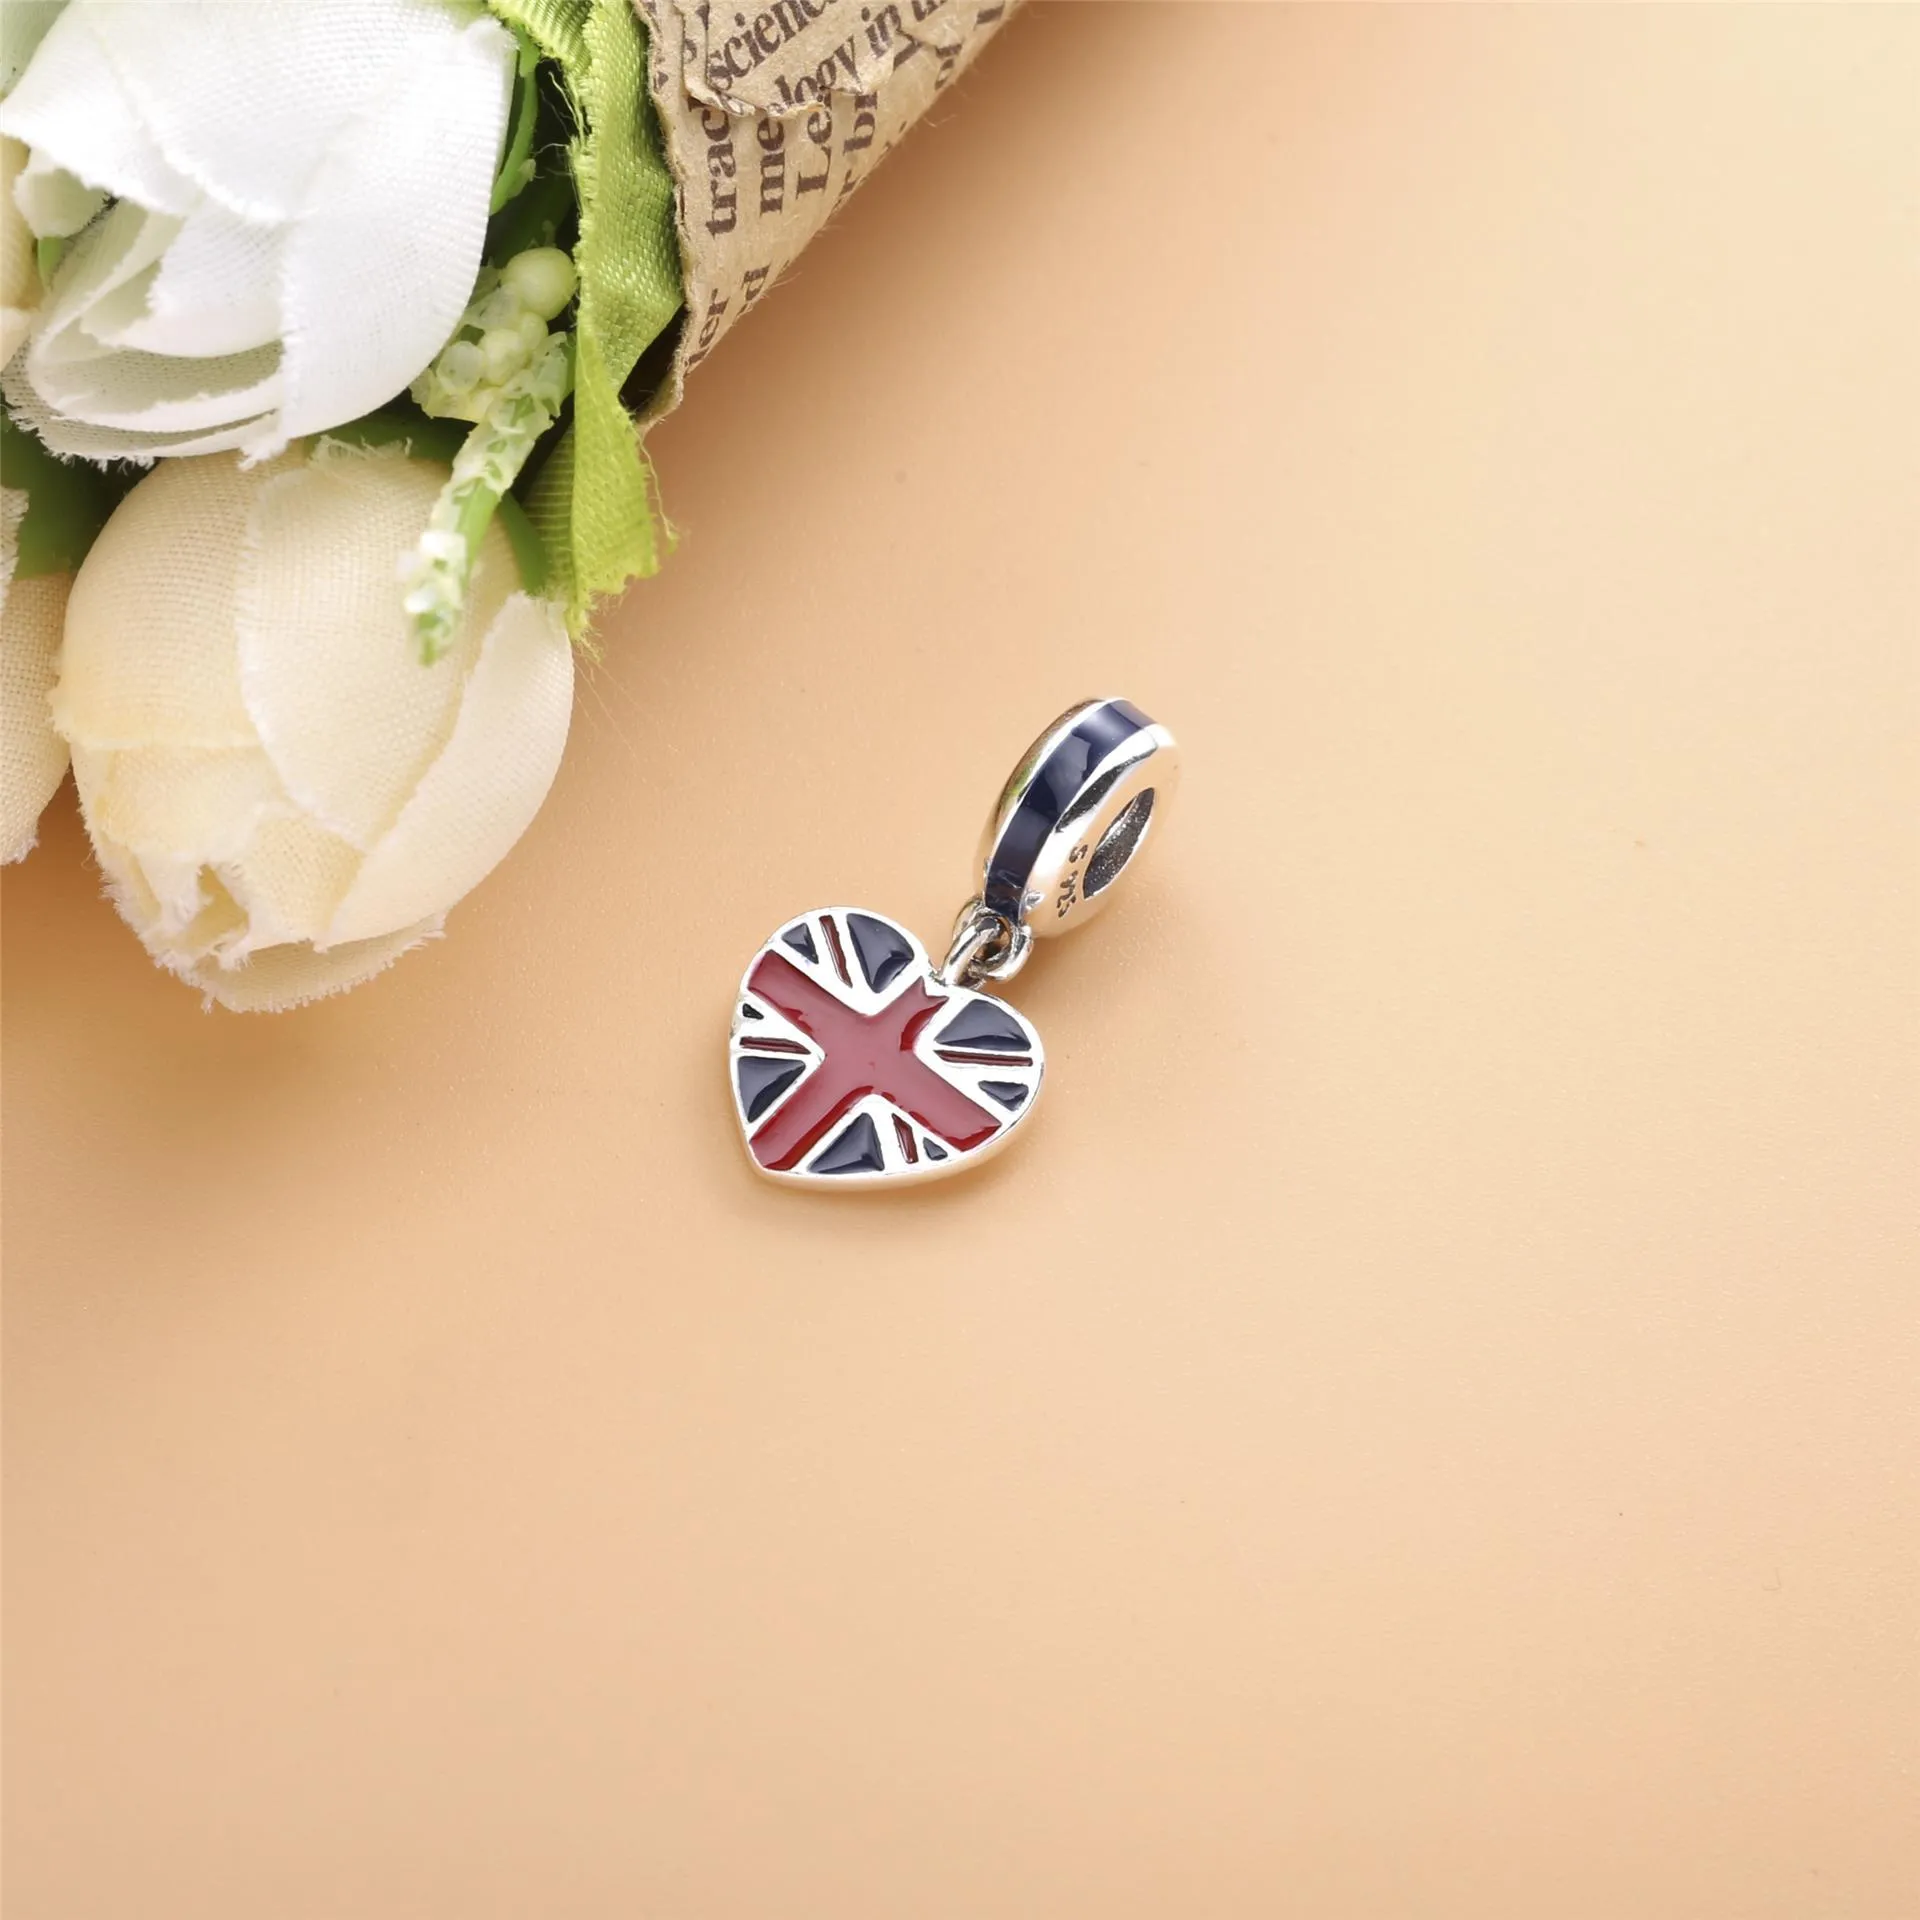 Pandantiv cu steagul Marii Britanii în formă de inimă, din argint 925 şi email albastru şi roşu - 791512ENMX